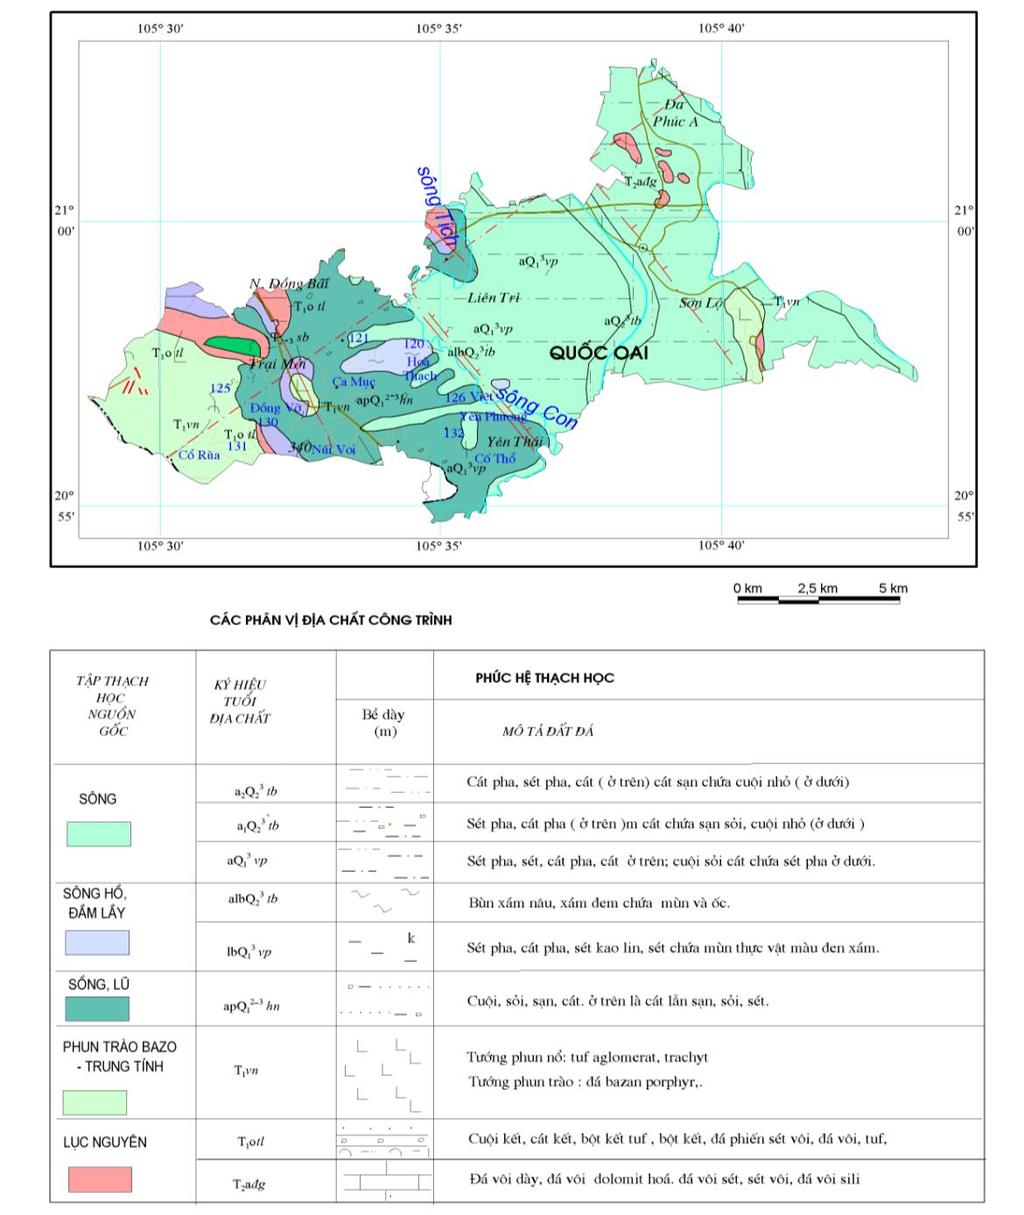 Hình 2.13. Bản đồ địa chất công trình khu vực huyện Quốc Oai Tại dự án Khu đô thị sinh thái và Trung Tâm thương mại Quốc Oai.